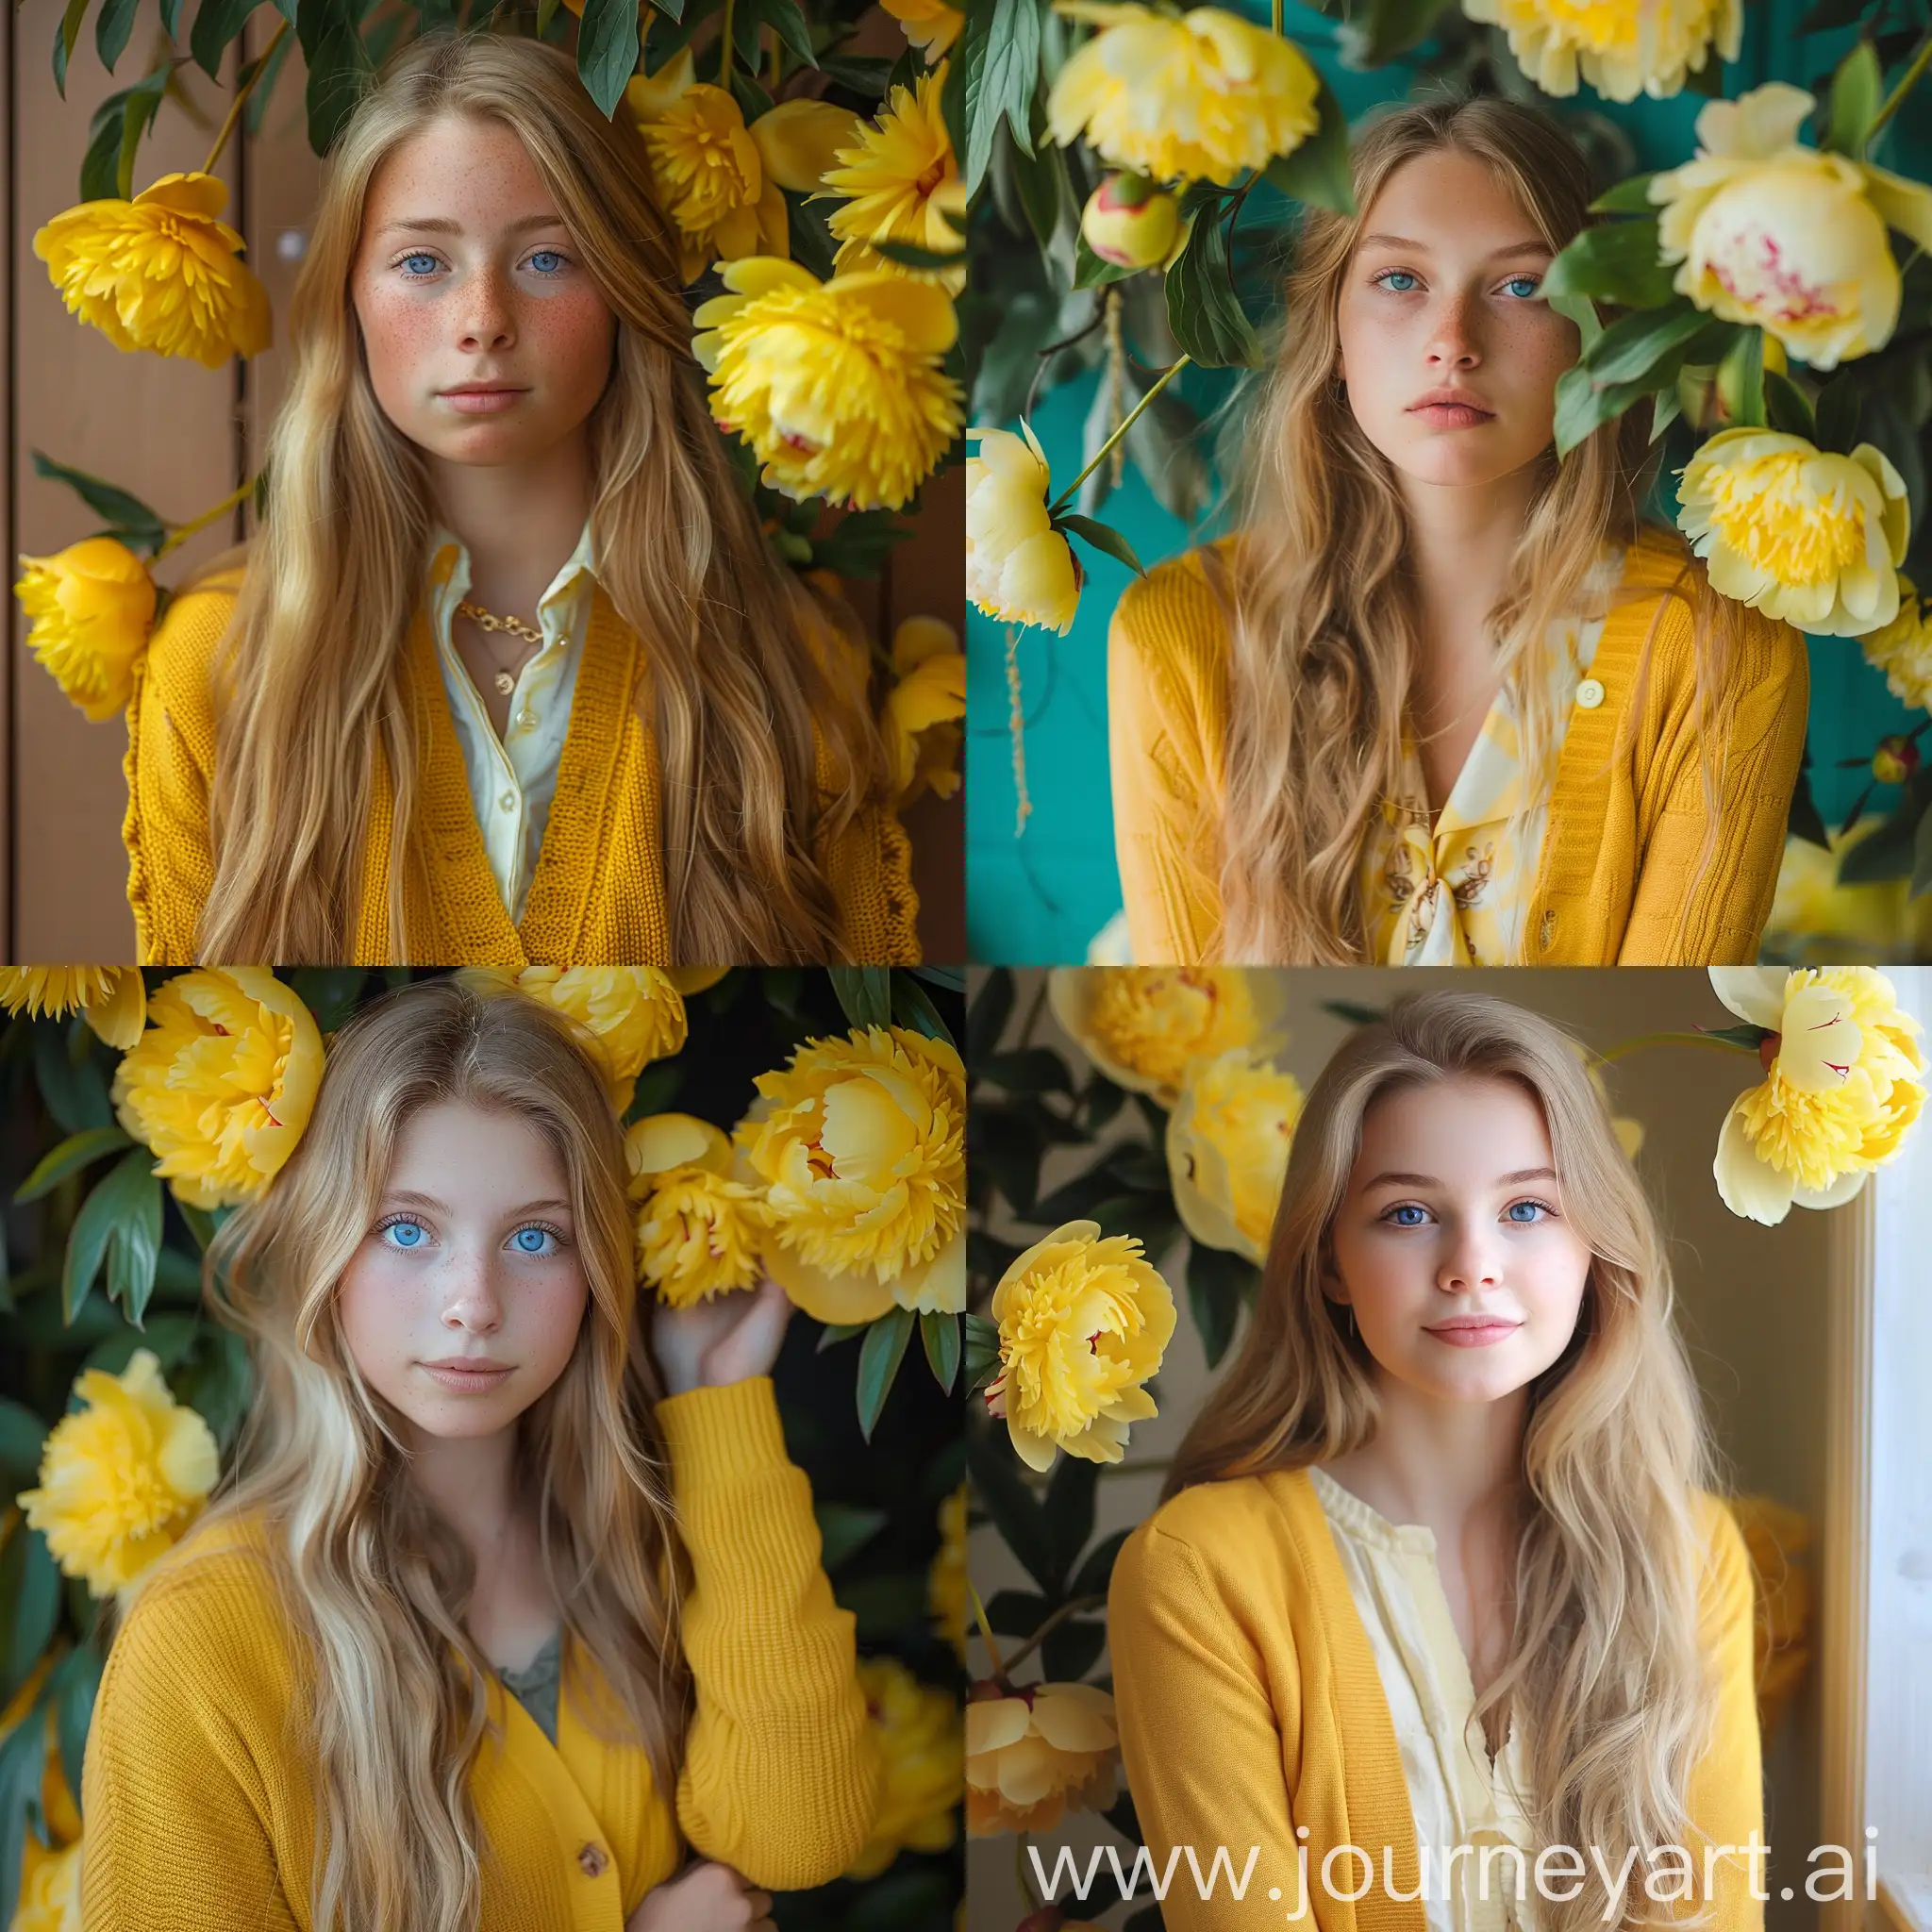 Девушка лет 19, студентка, спокойствие, желтый, умиротворение, блондинка, голубые глаза, желтые пионы, желтый кардиган, длинные волосы